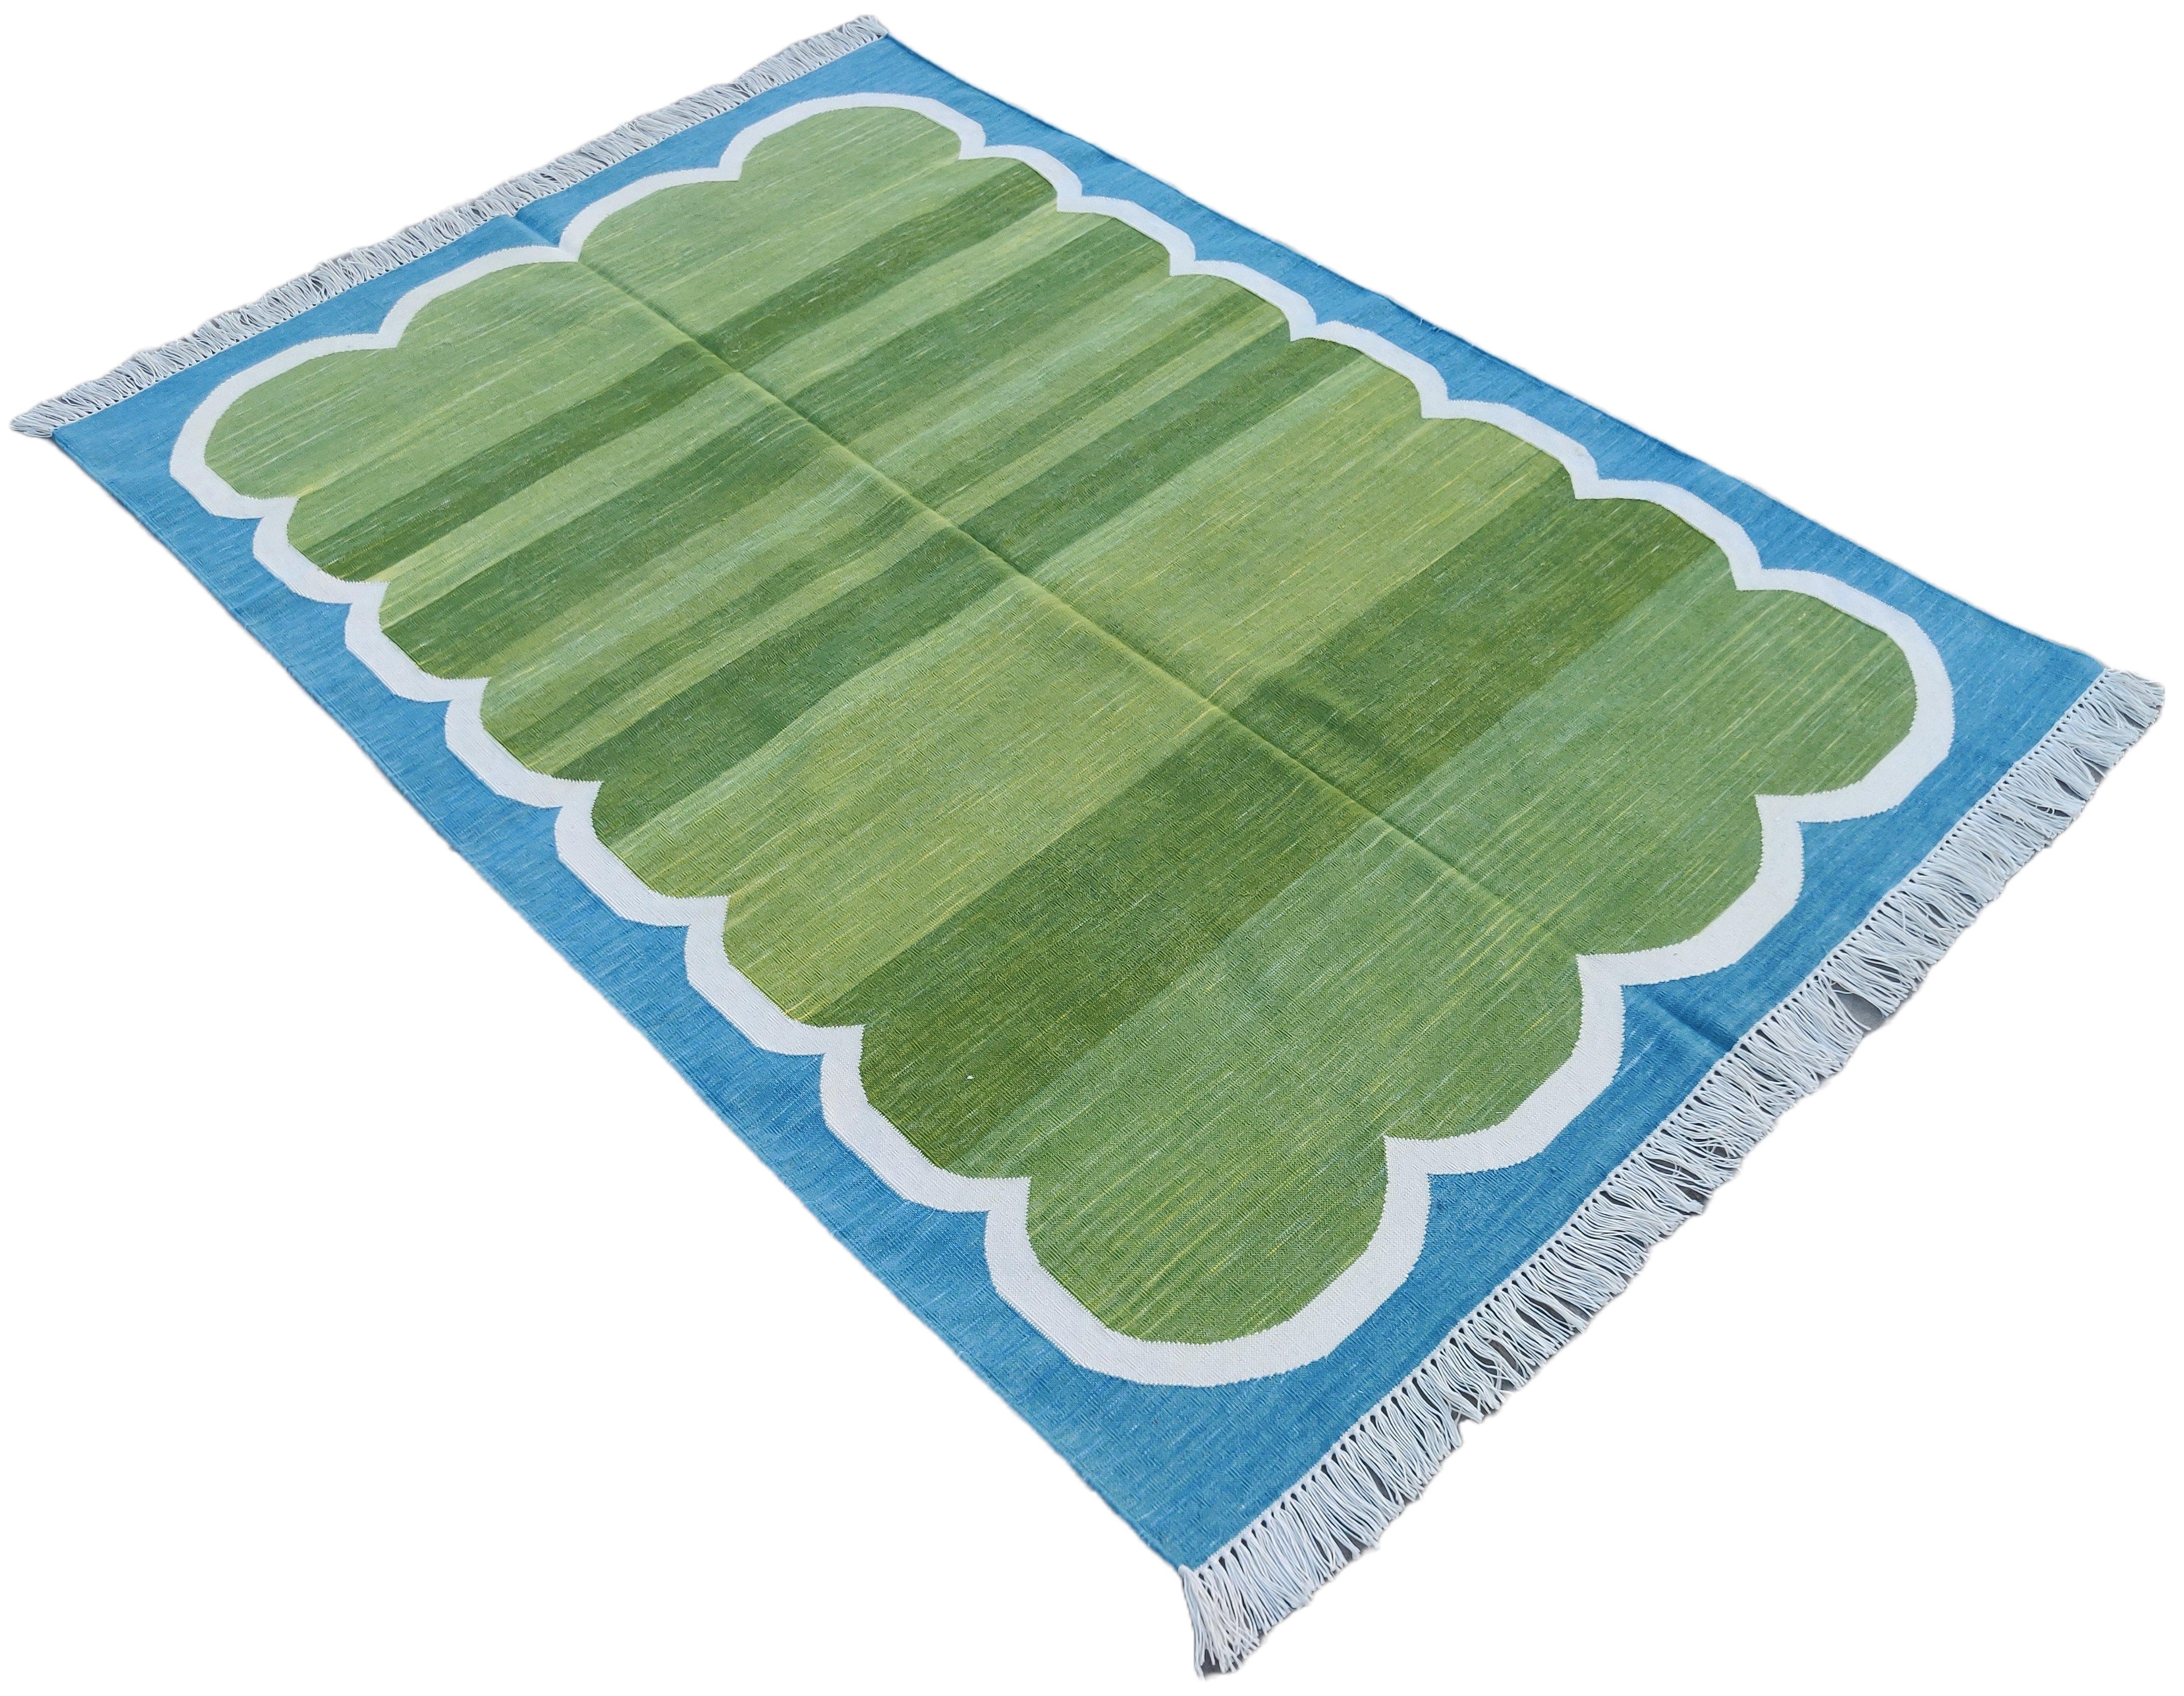 Baumwolle pflanzlich gefärbt Grün, Creme und Blau Scalloped Striped Indian Dhurrie Rug-4'x6' 
Diese speziellen flachgewebten Dhurries werden aus 15-fachem Garn aus 100% Baumwolle handgewebt. Aufgrund der speziellen Fertigungstechniken, die zur